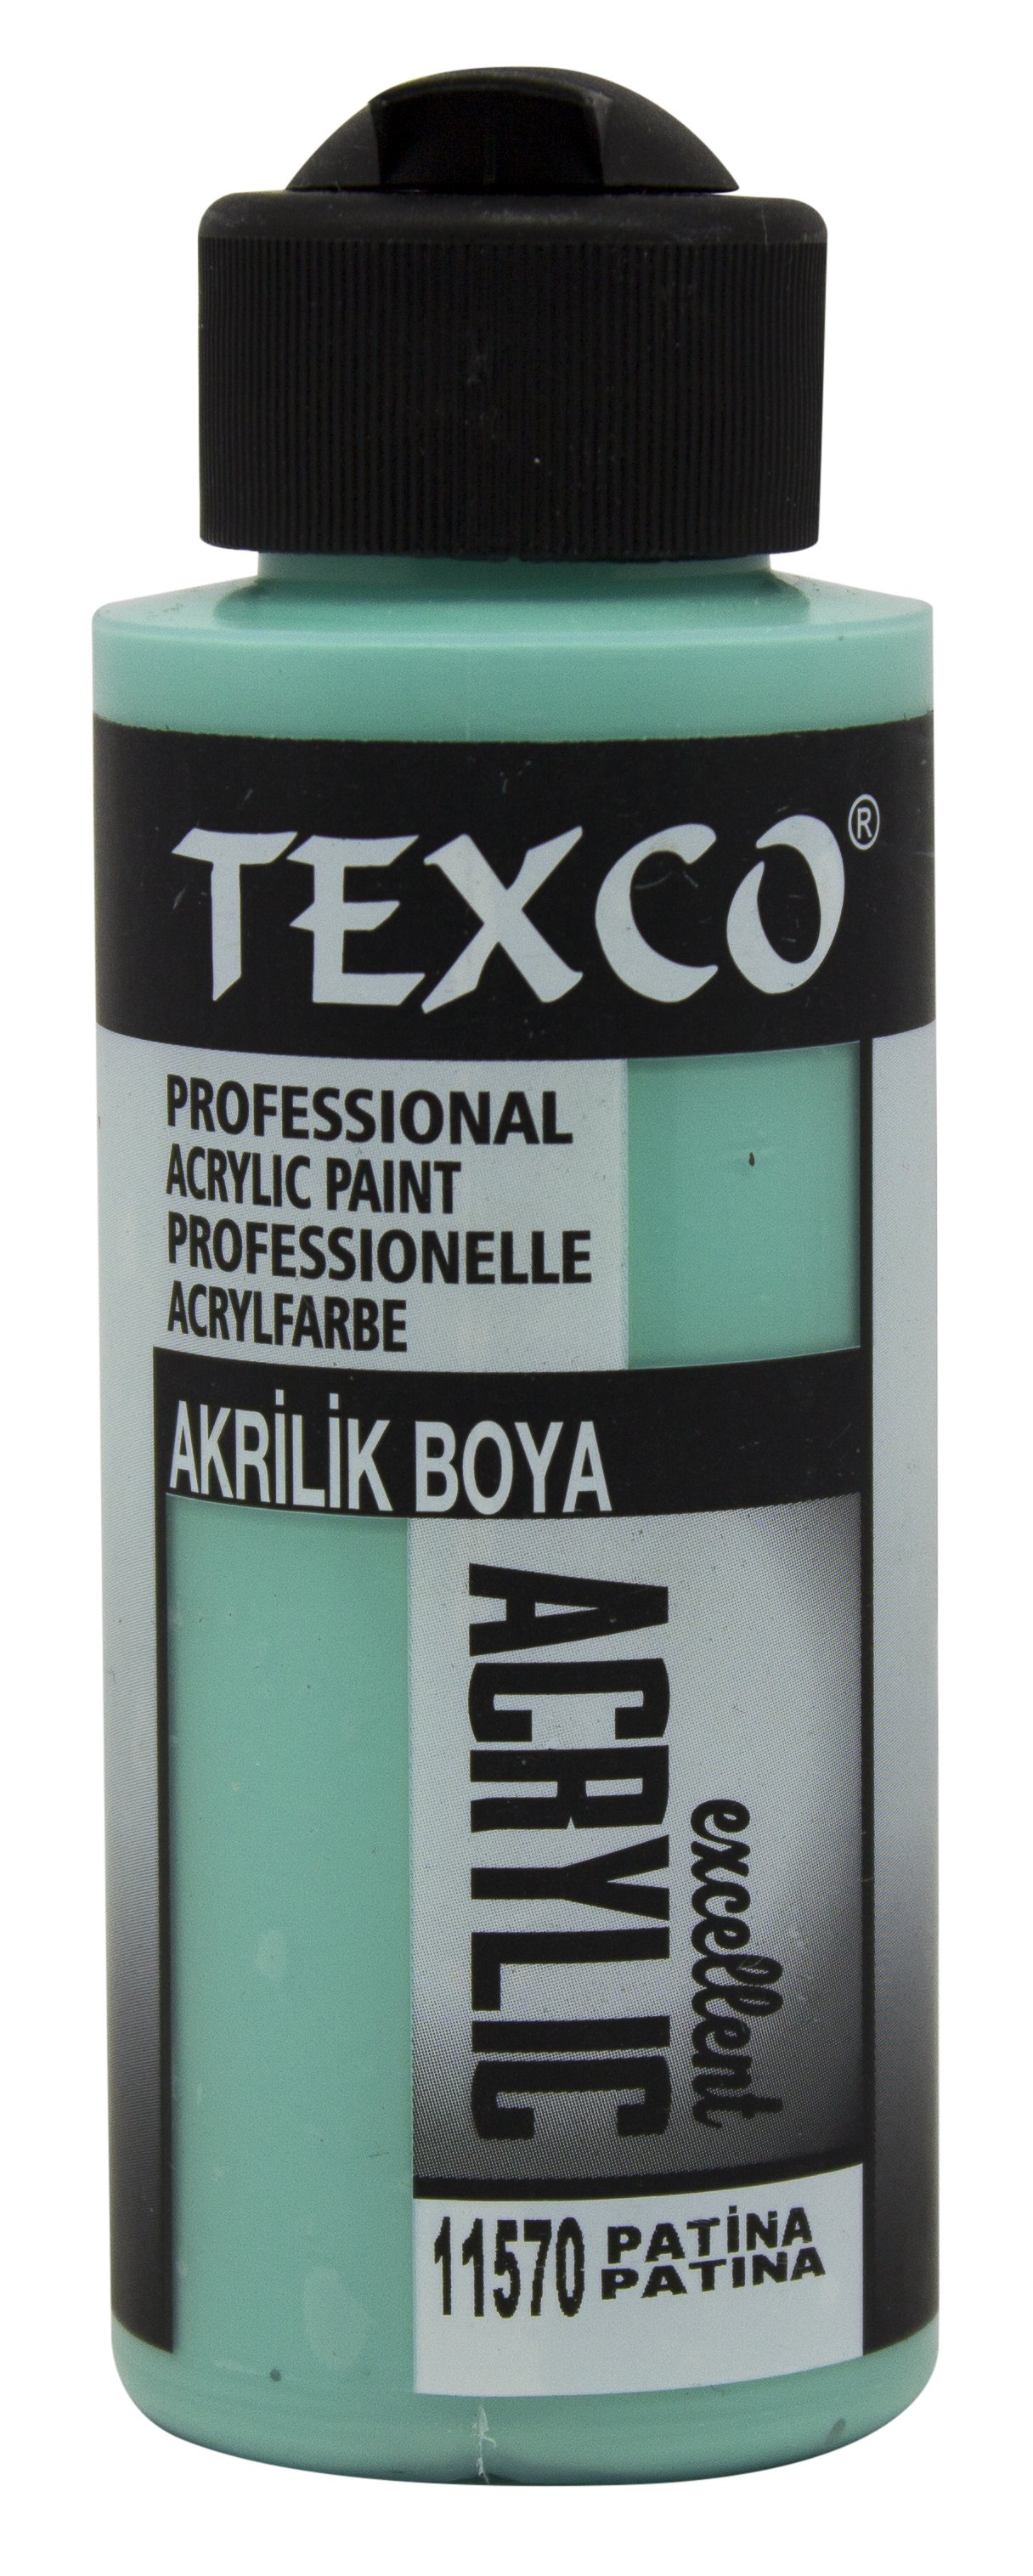 Texco Excellent Akrilik Boya 11570-Patina 110 cc